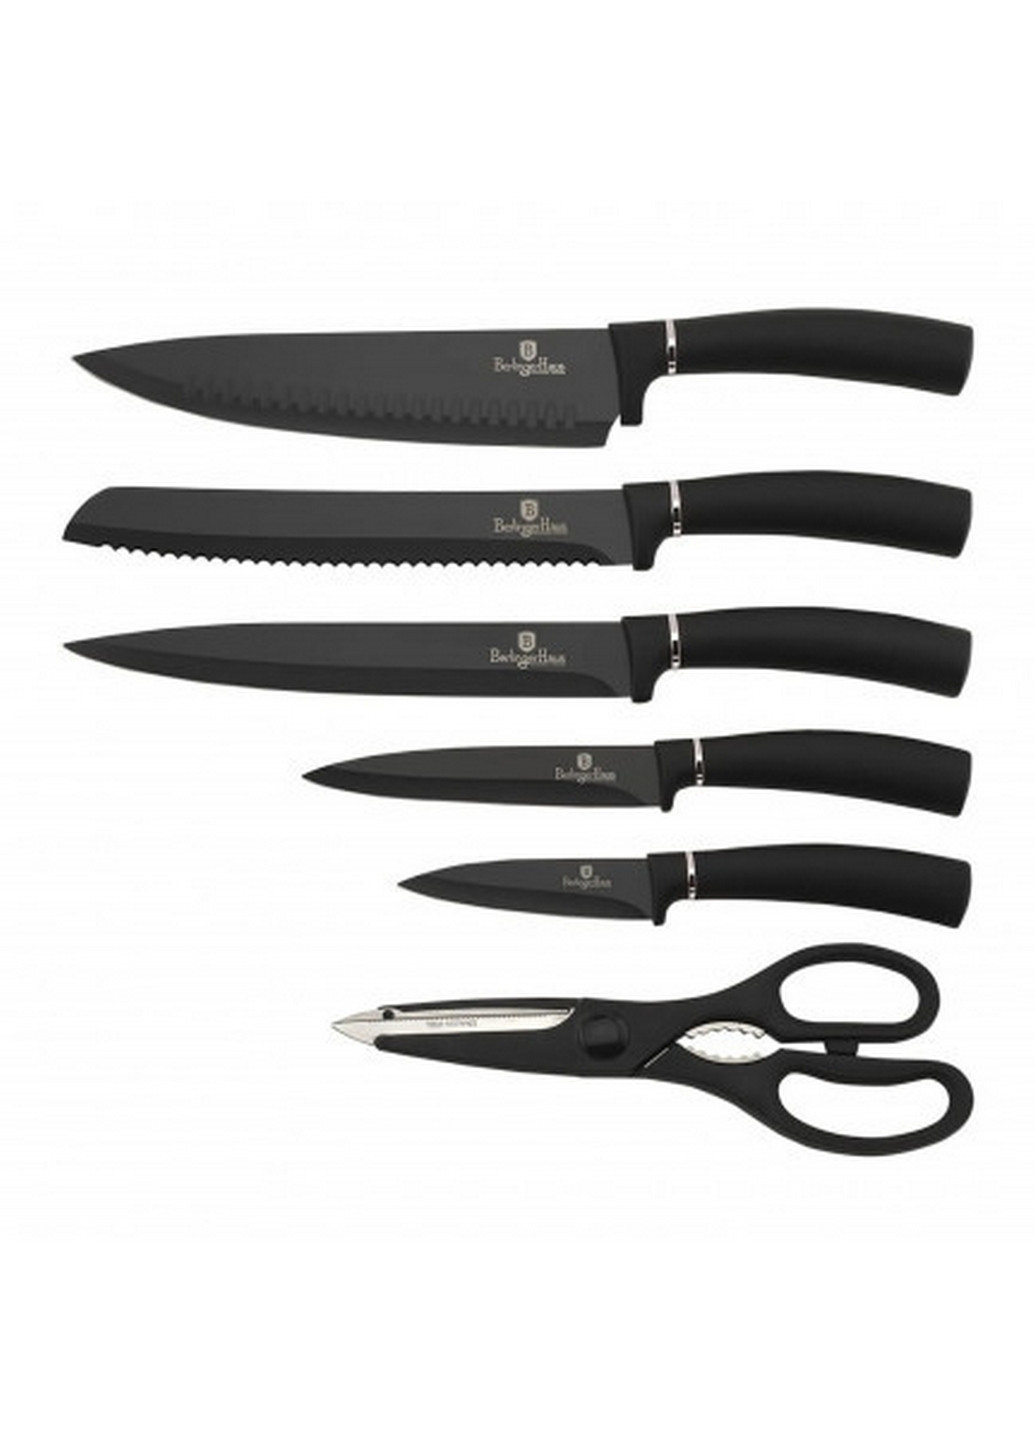 Набор ножей из 7 предметов Black Silver Collection Berlinger Haus чёрные,